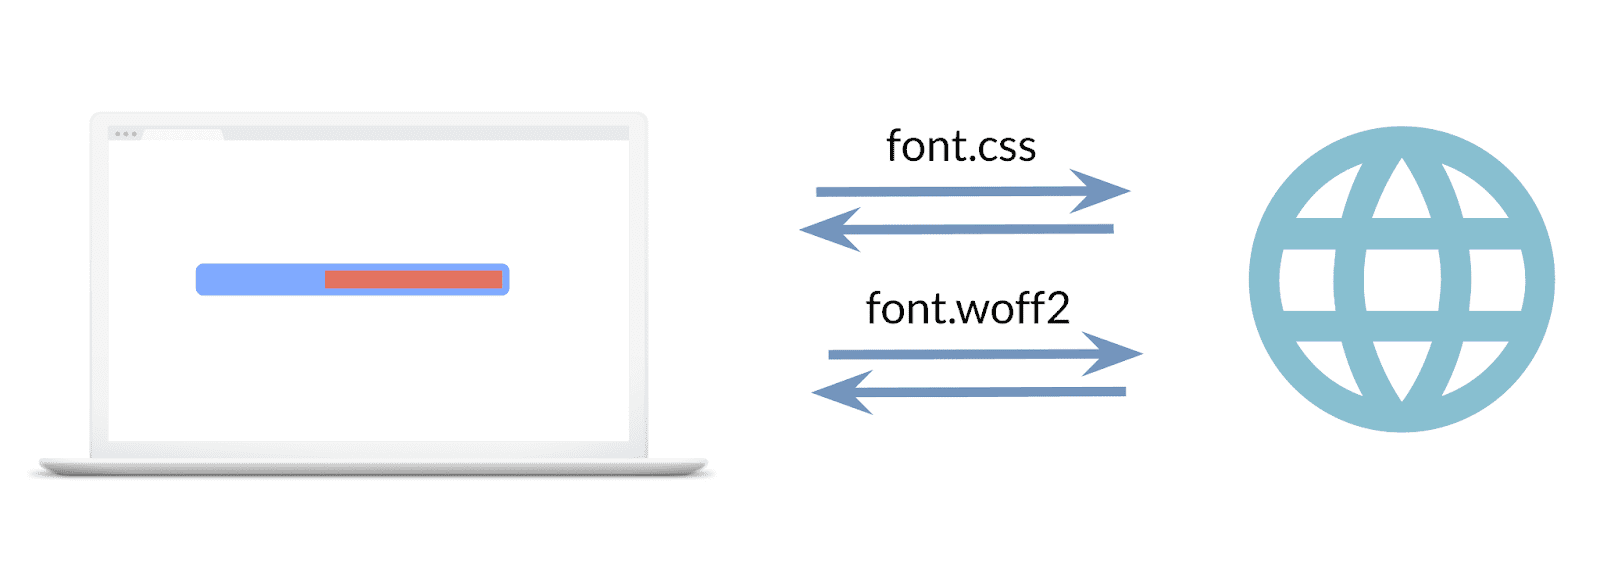 Изображение, показывающее два сделанных запроса: один для таблицы стилей шрифта, второй для файла шрифта.